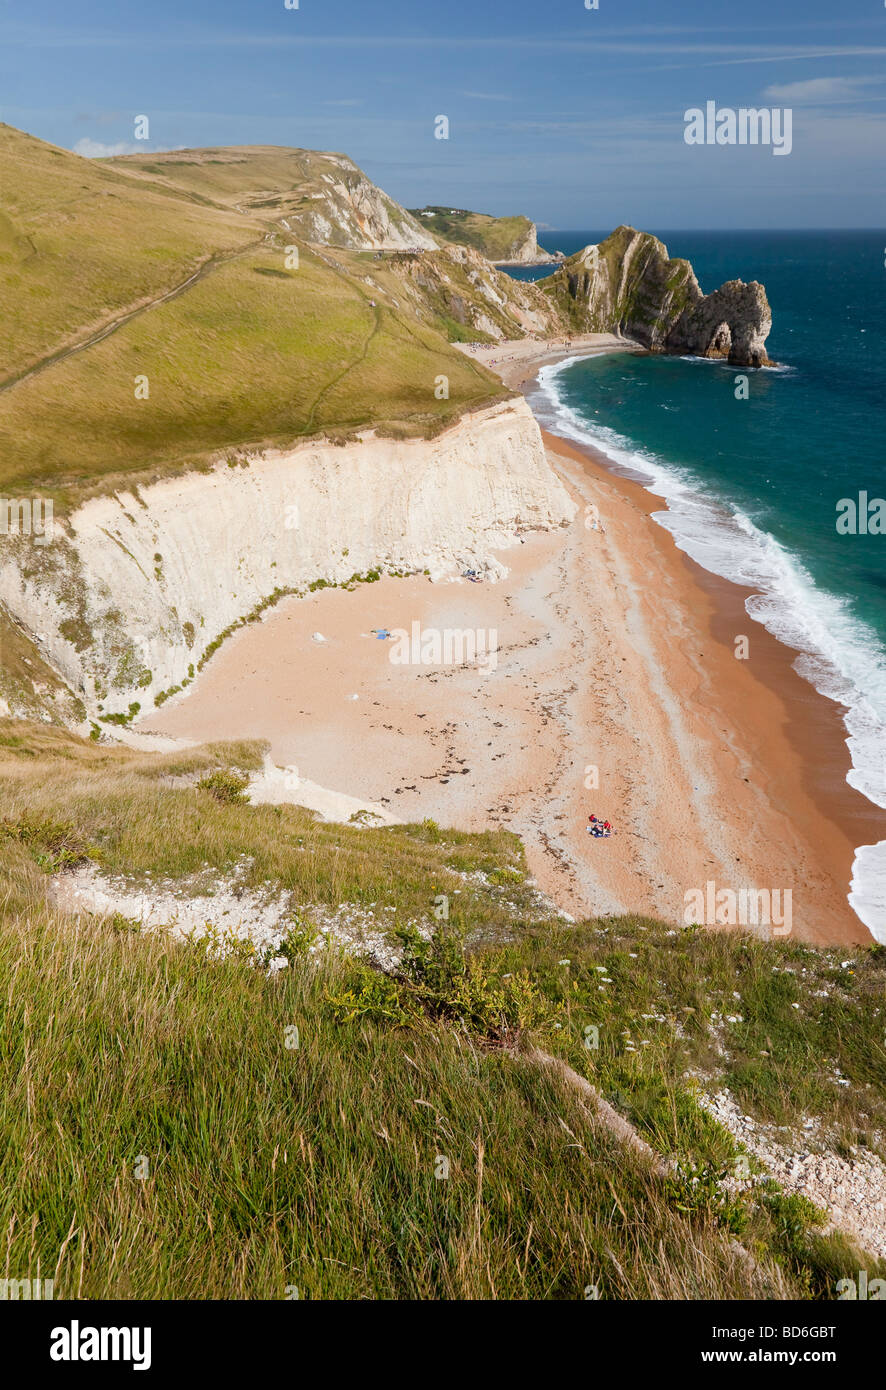 Von Cliff Tops Porträt des Sands und jurassic Küste betrachten Durdle Dor, Dorset, Urlaubsziel, Wanderparadies Stockfoto